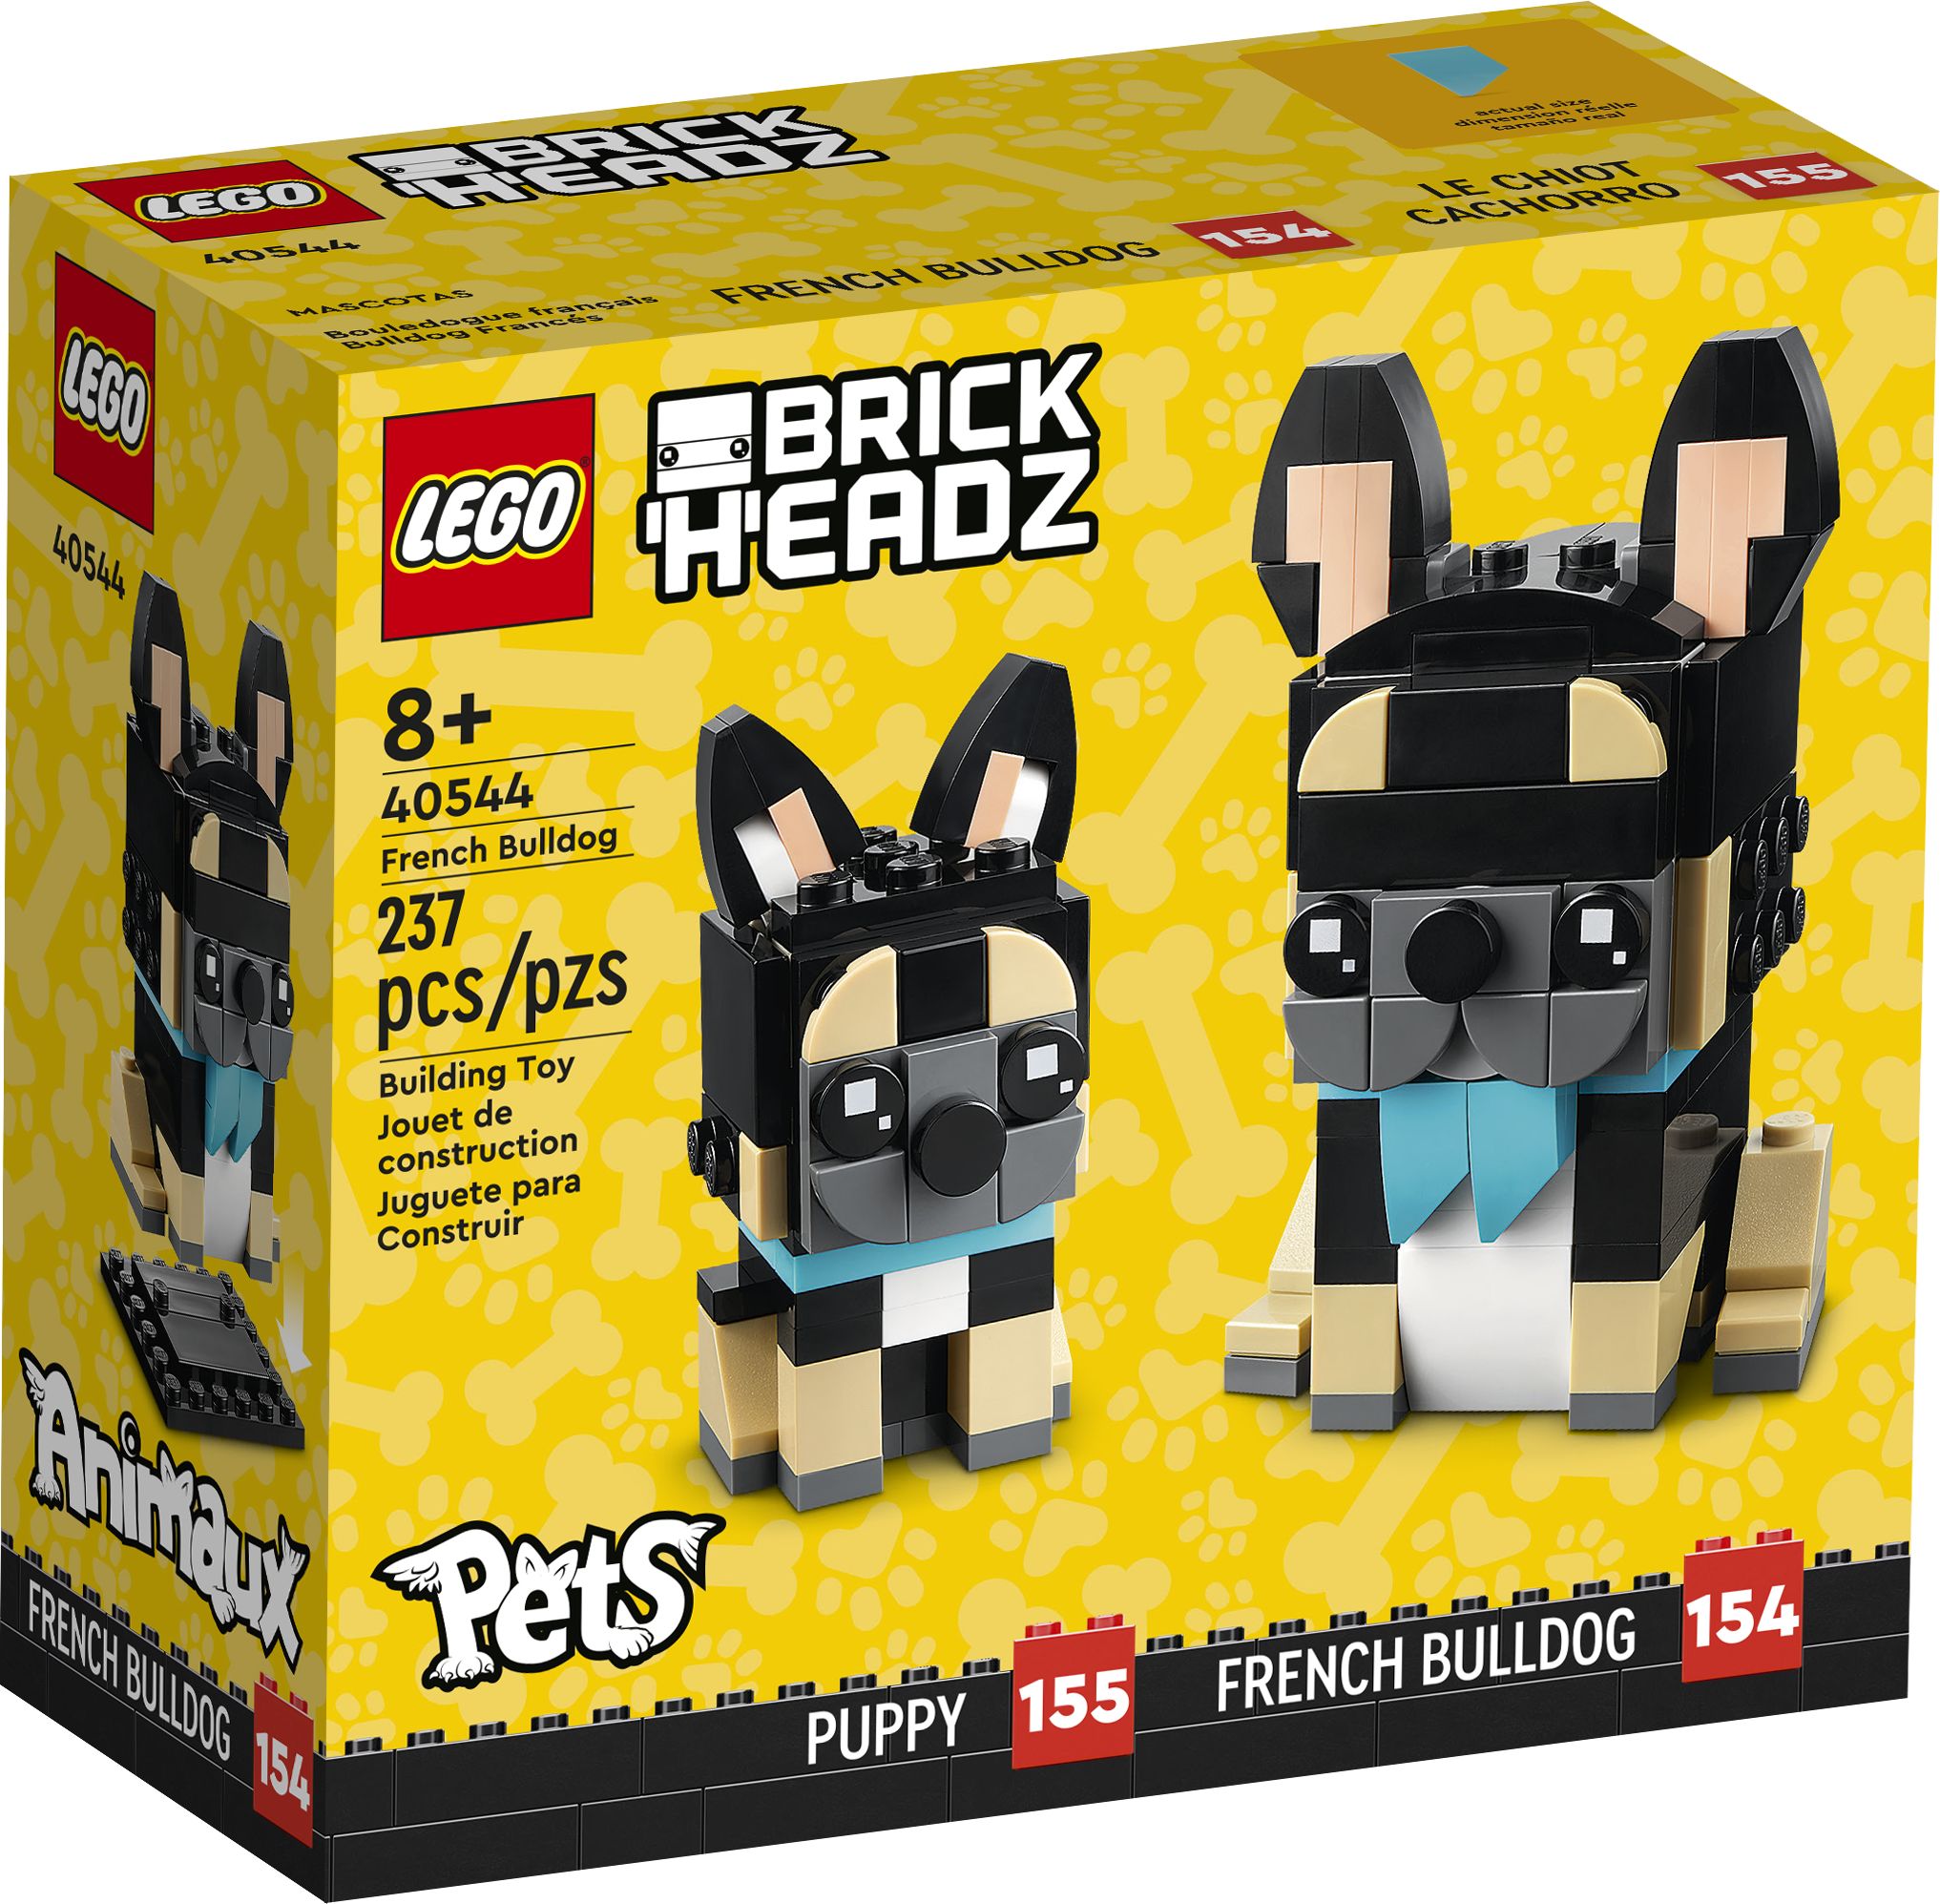 LEGO BrickHeadz 40544 Pets - French Bulldog LEGO_40544_Box1_v39.jpg